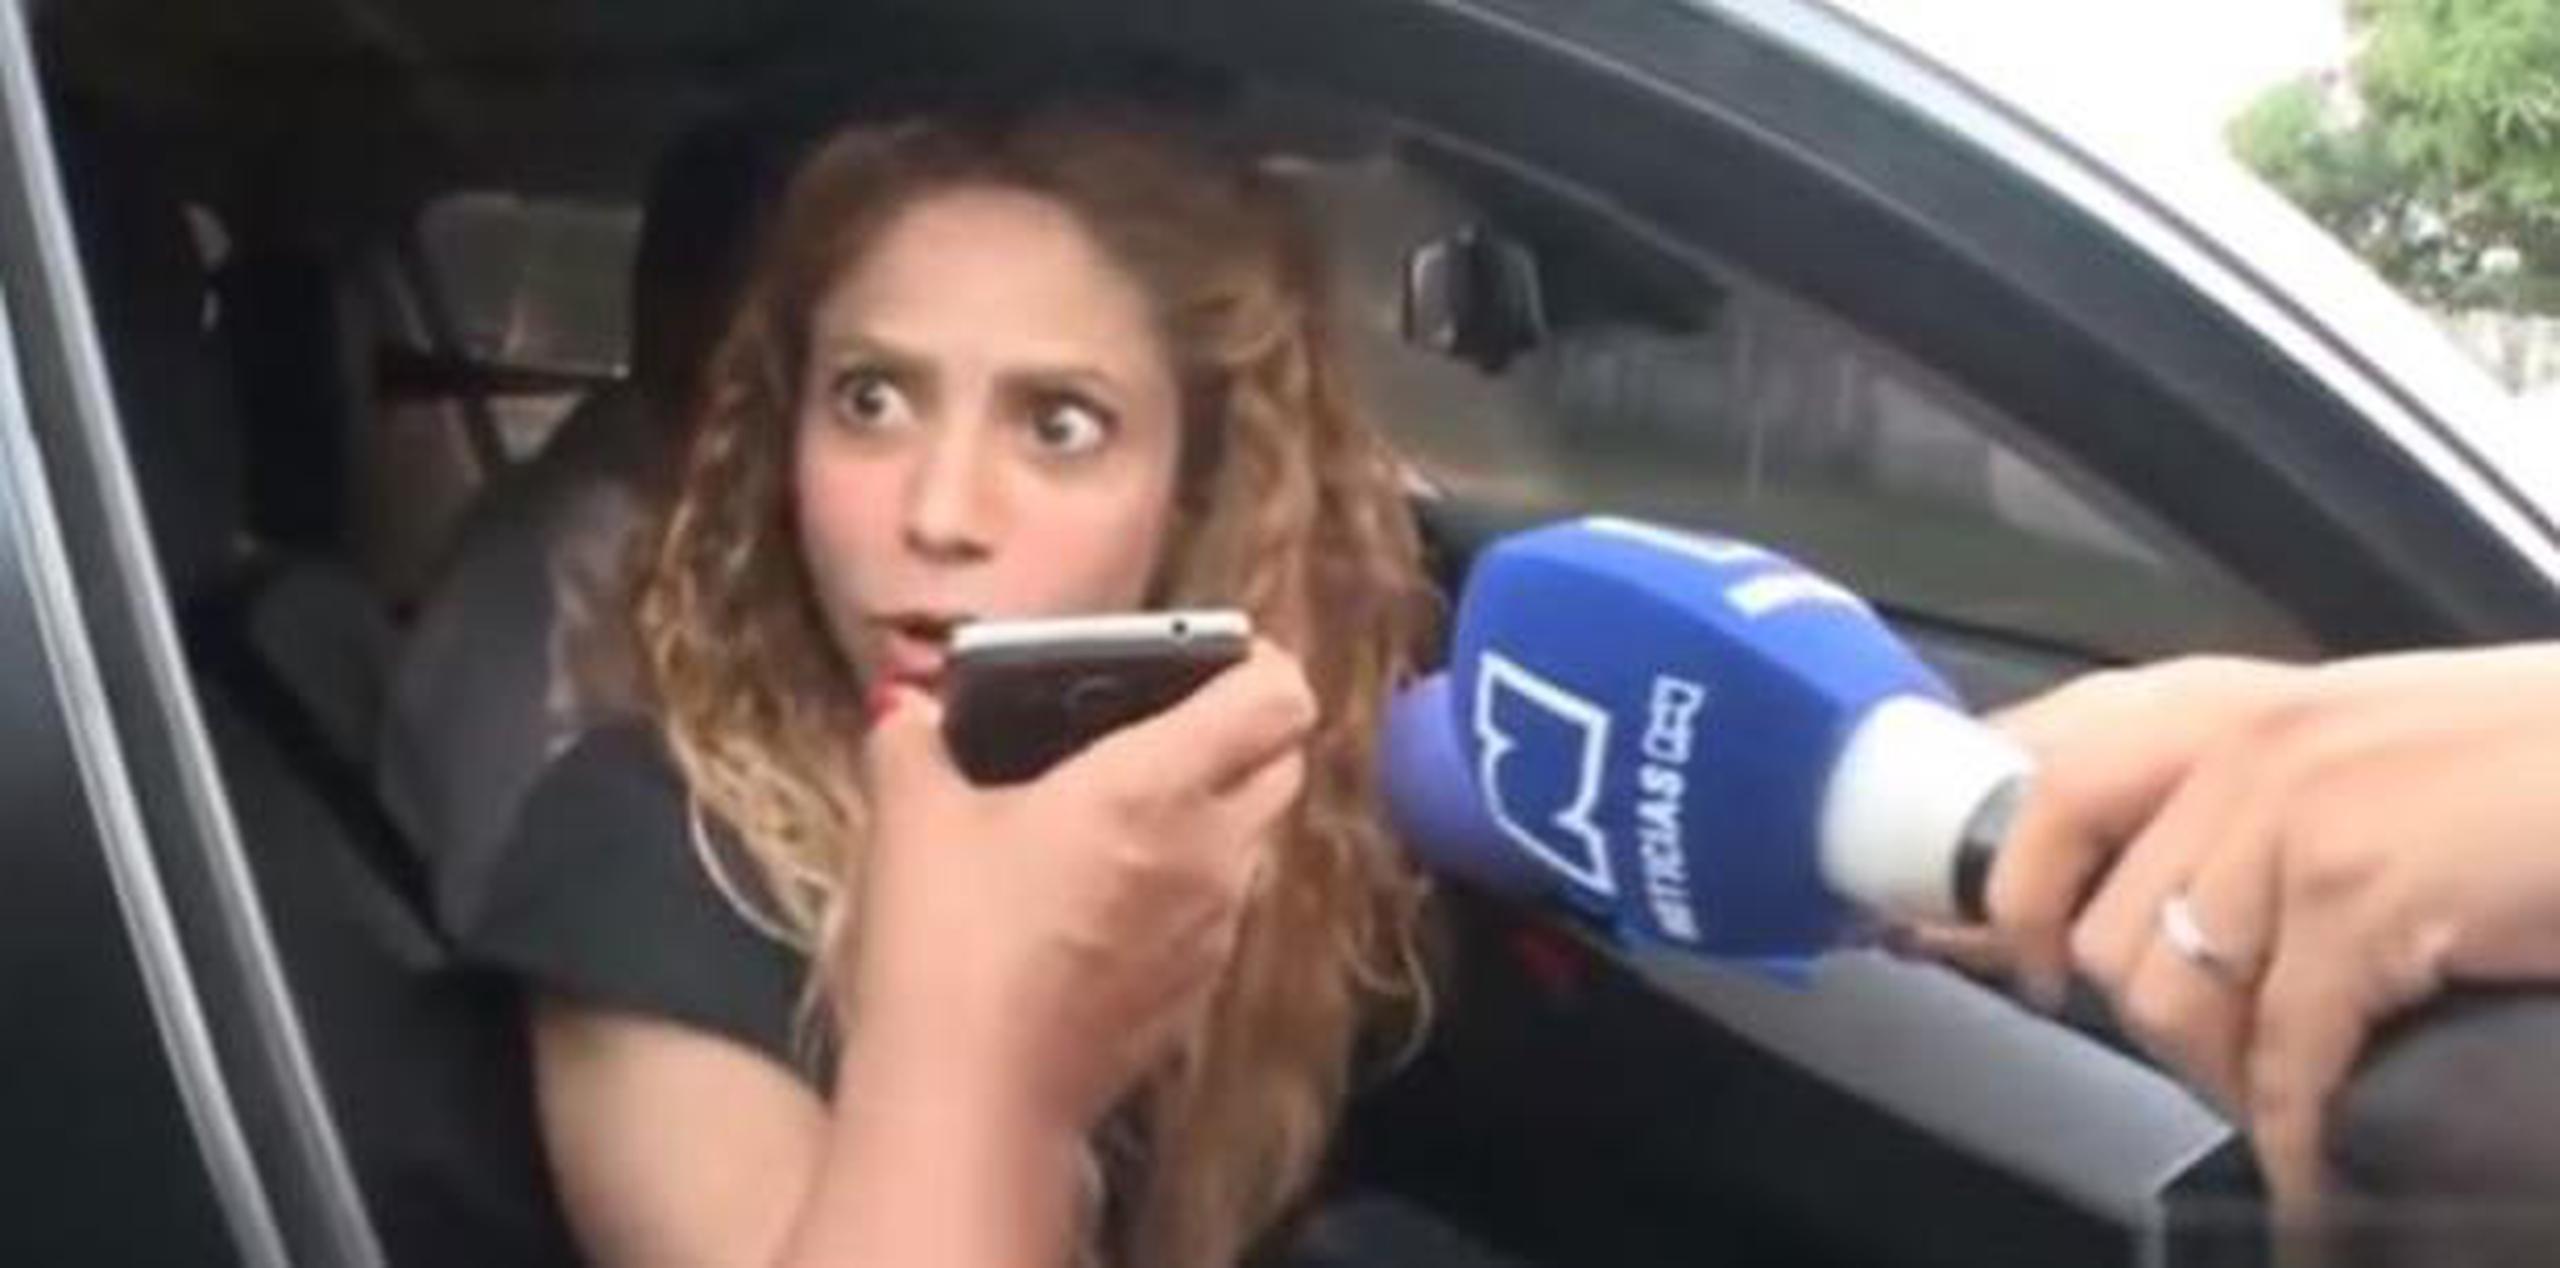 "Shakira, ¿estás embarazada?", le preguntaron. (Captura)